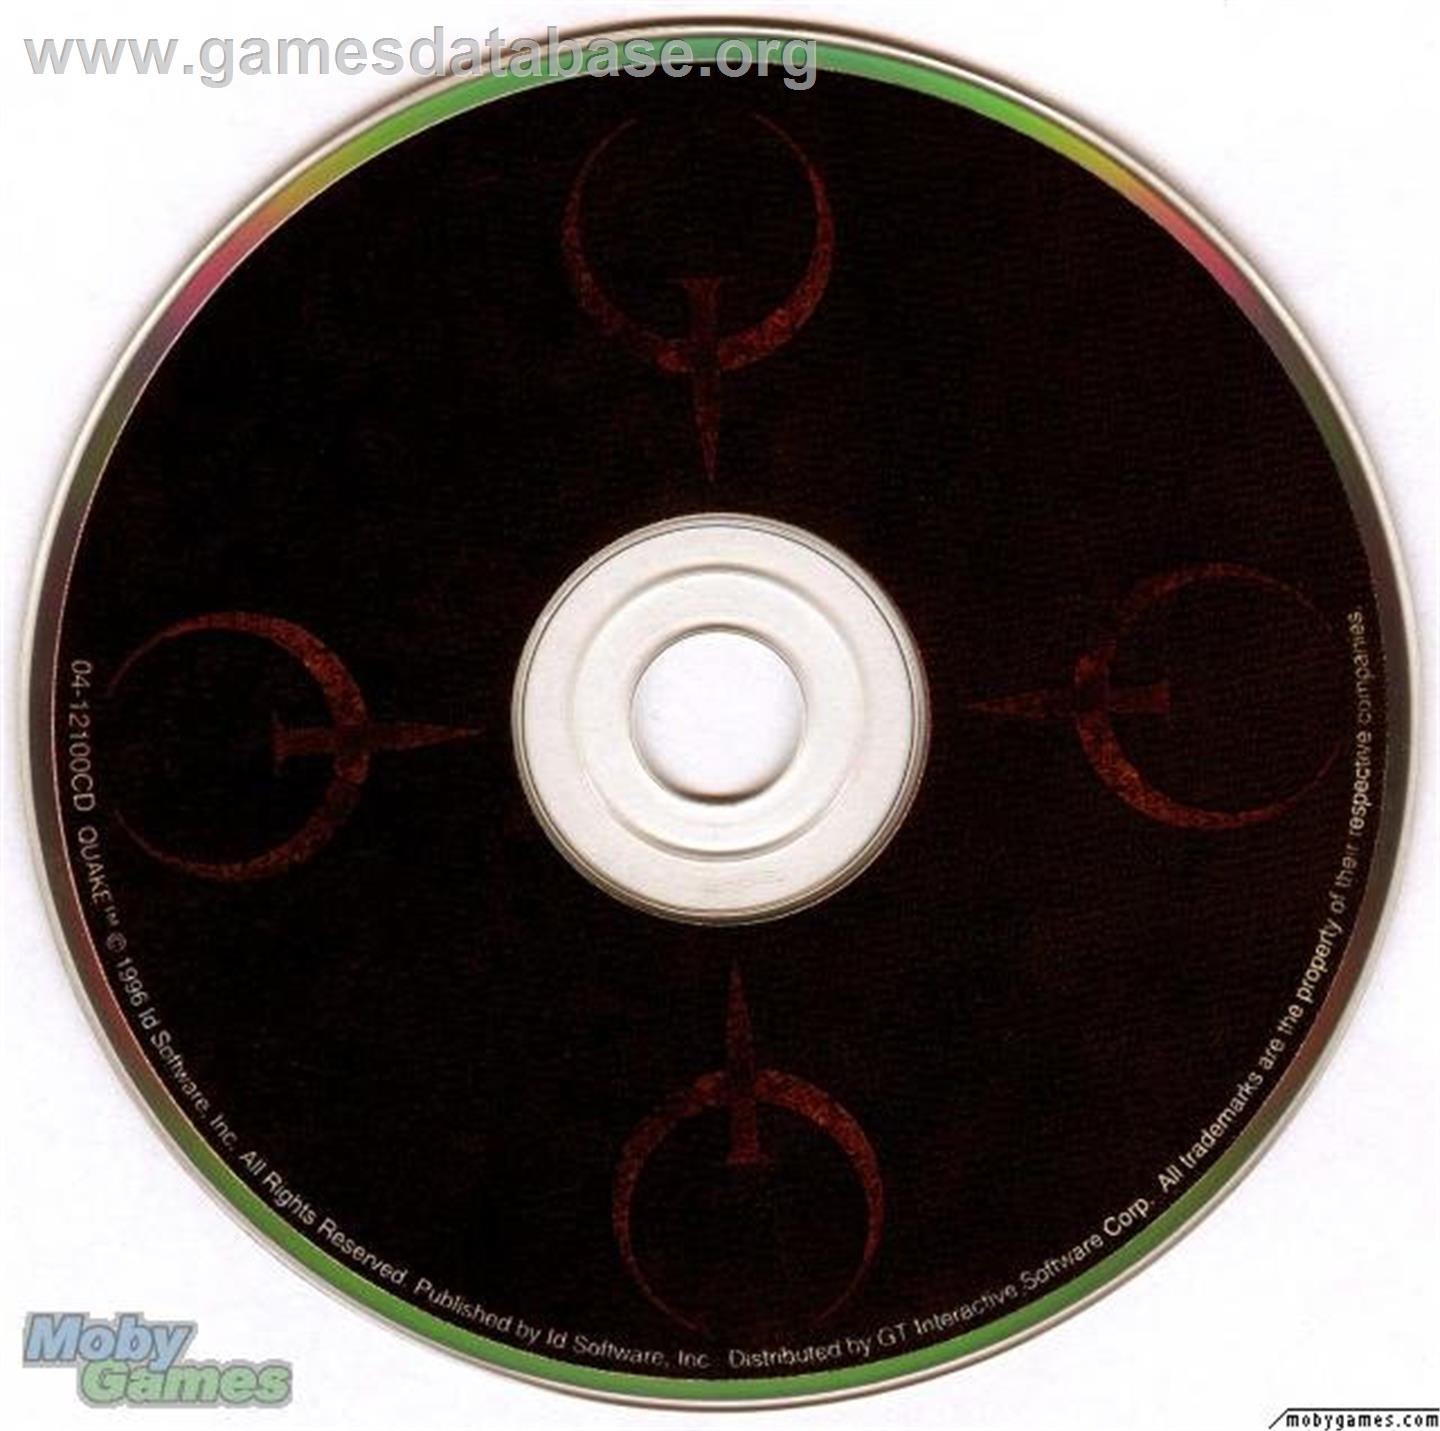 Quake - Microsoft DOS - Artwork - Disc